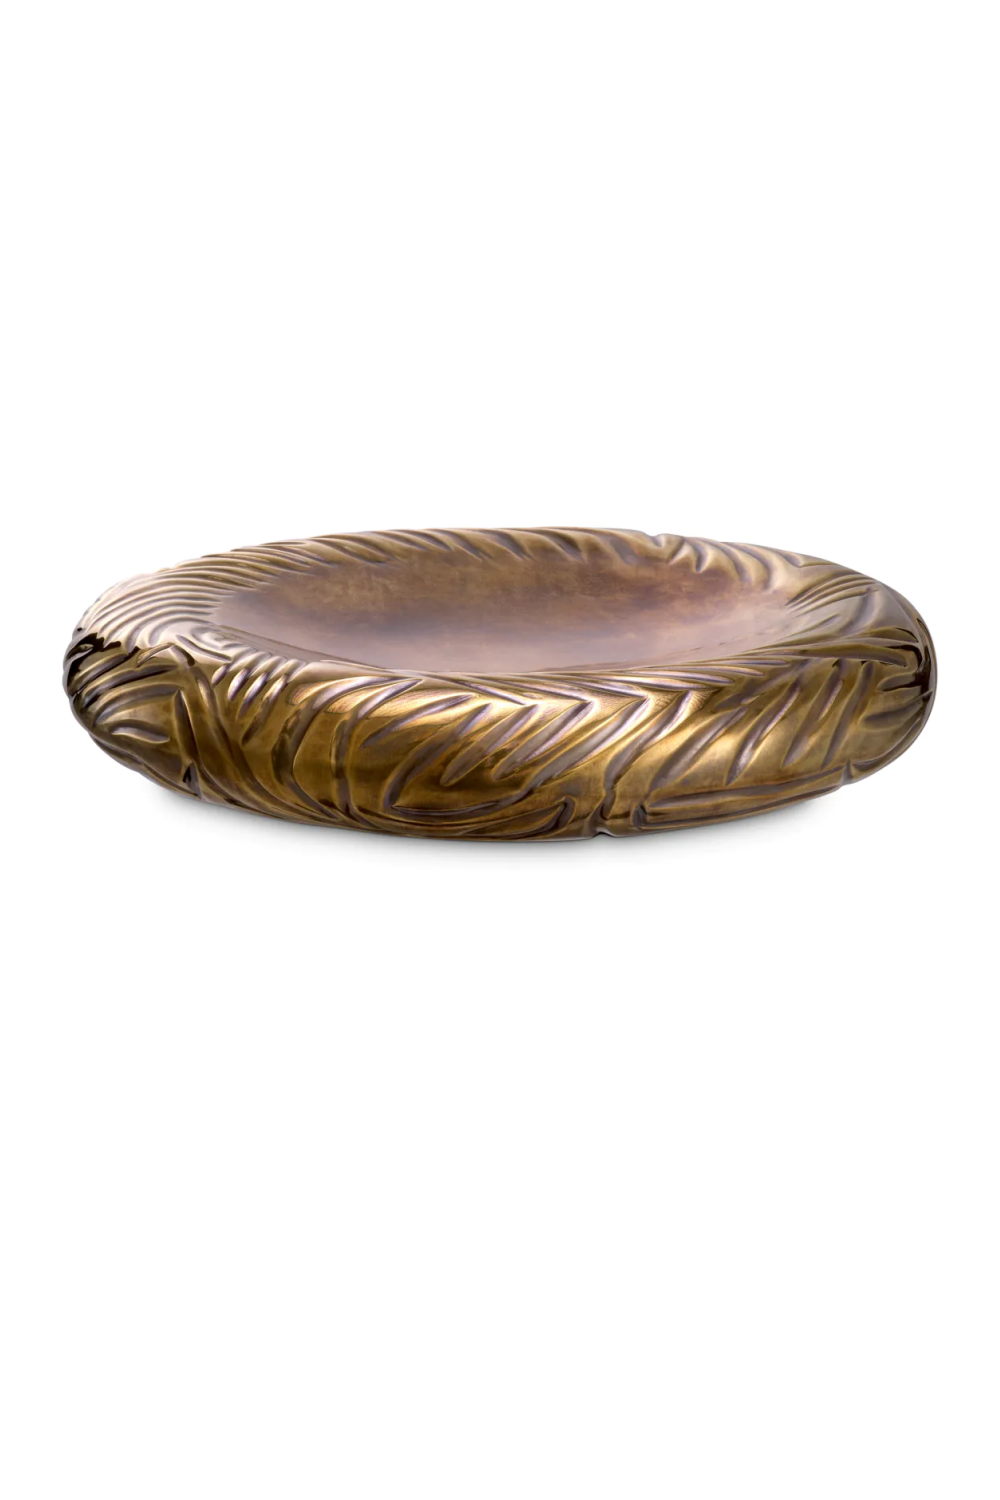 Vintage Brass Bowl | Eichholtz Sandrini | Oroa.com